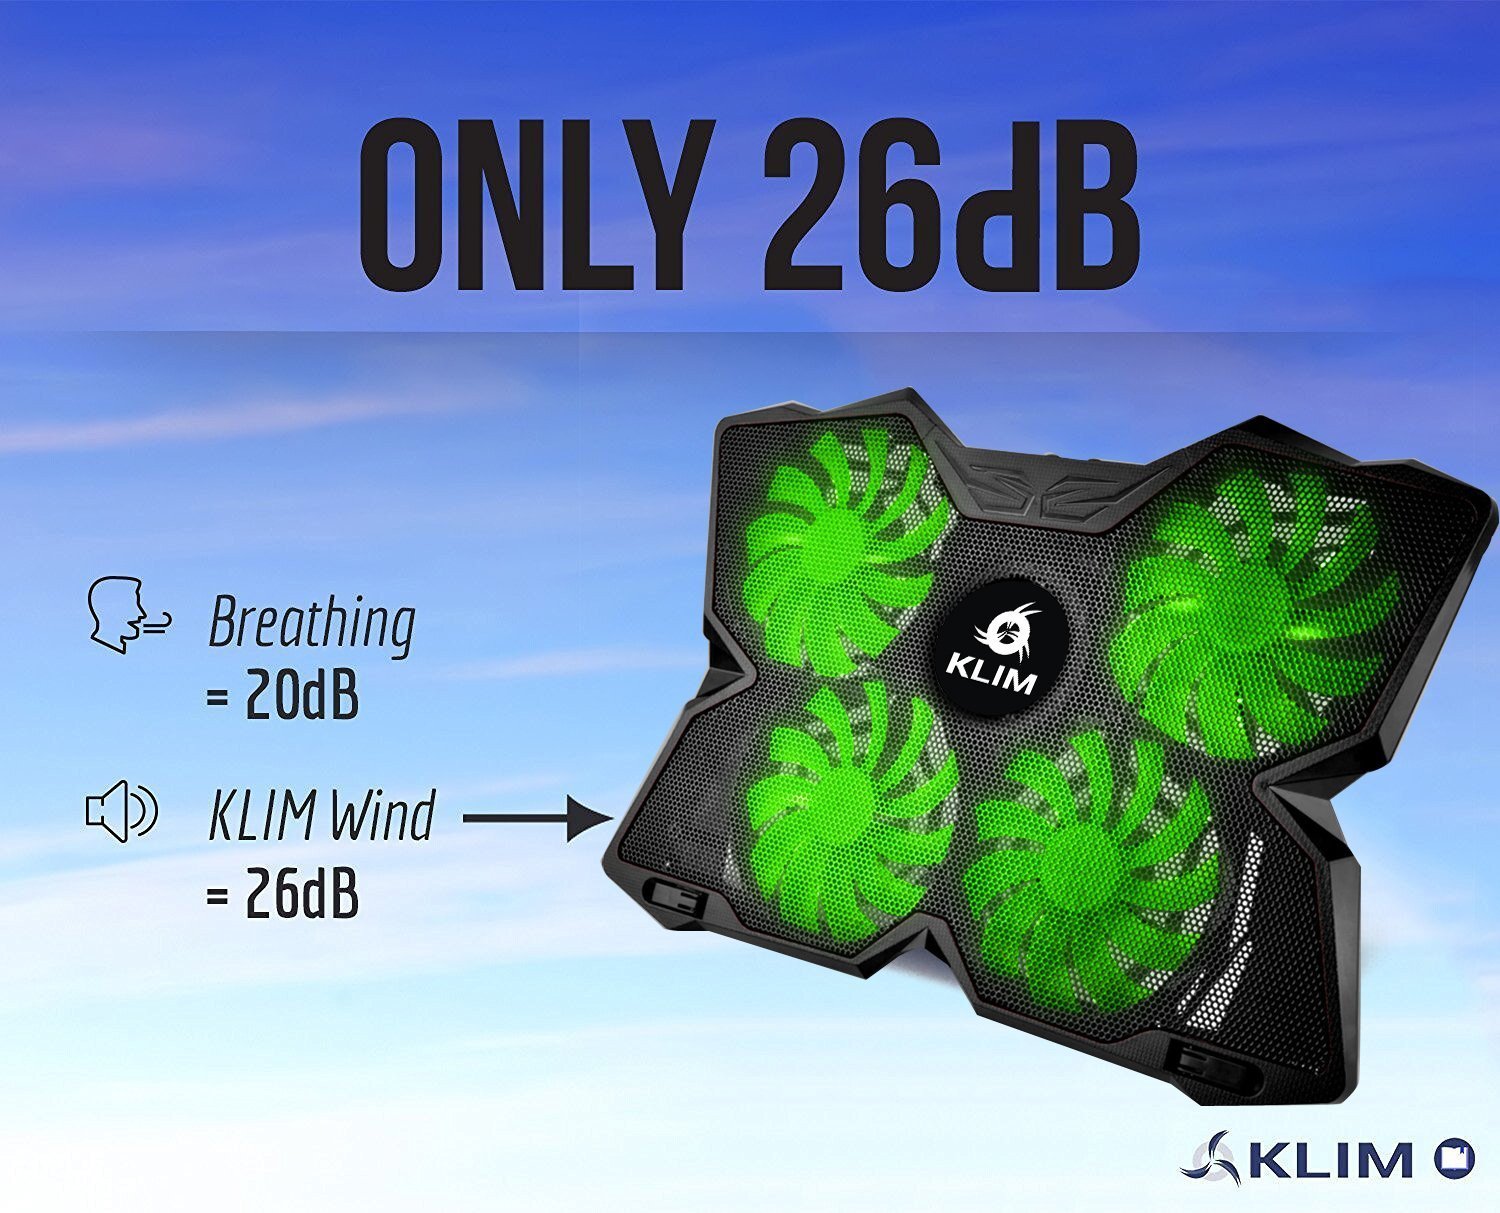 KLIM Wind Refroidisseur PC portable - Le Plus Puissant - Refroidissement Rapide - 4 Ventilateurs Support Ventilé Gamer Gaming Plaque (Vert) clicktofournisseur.com